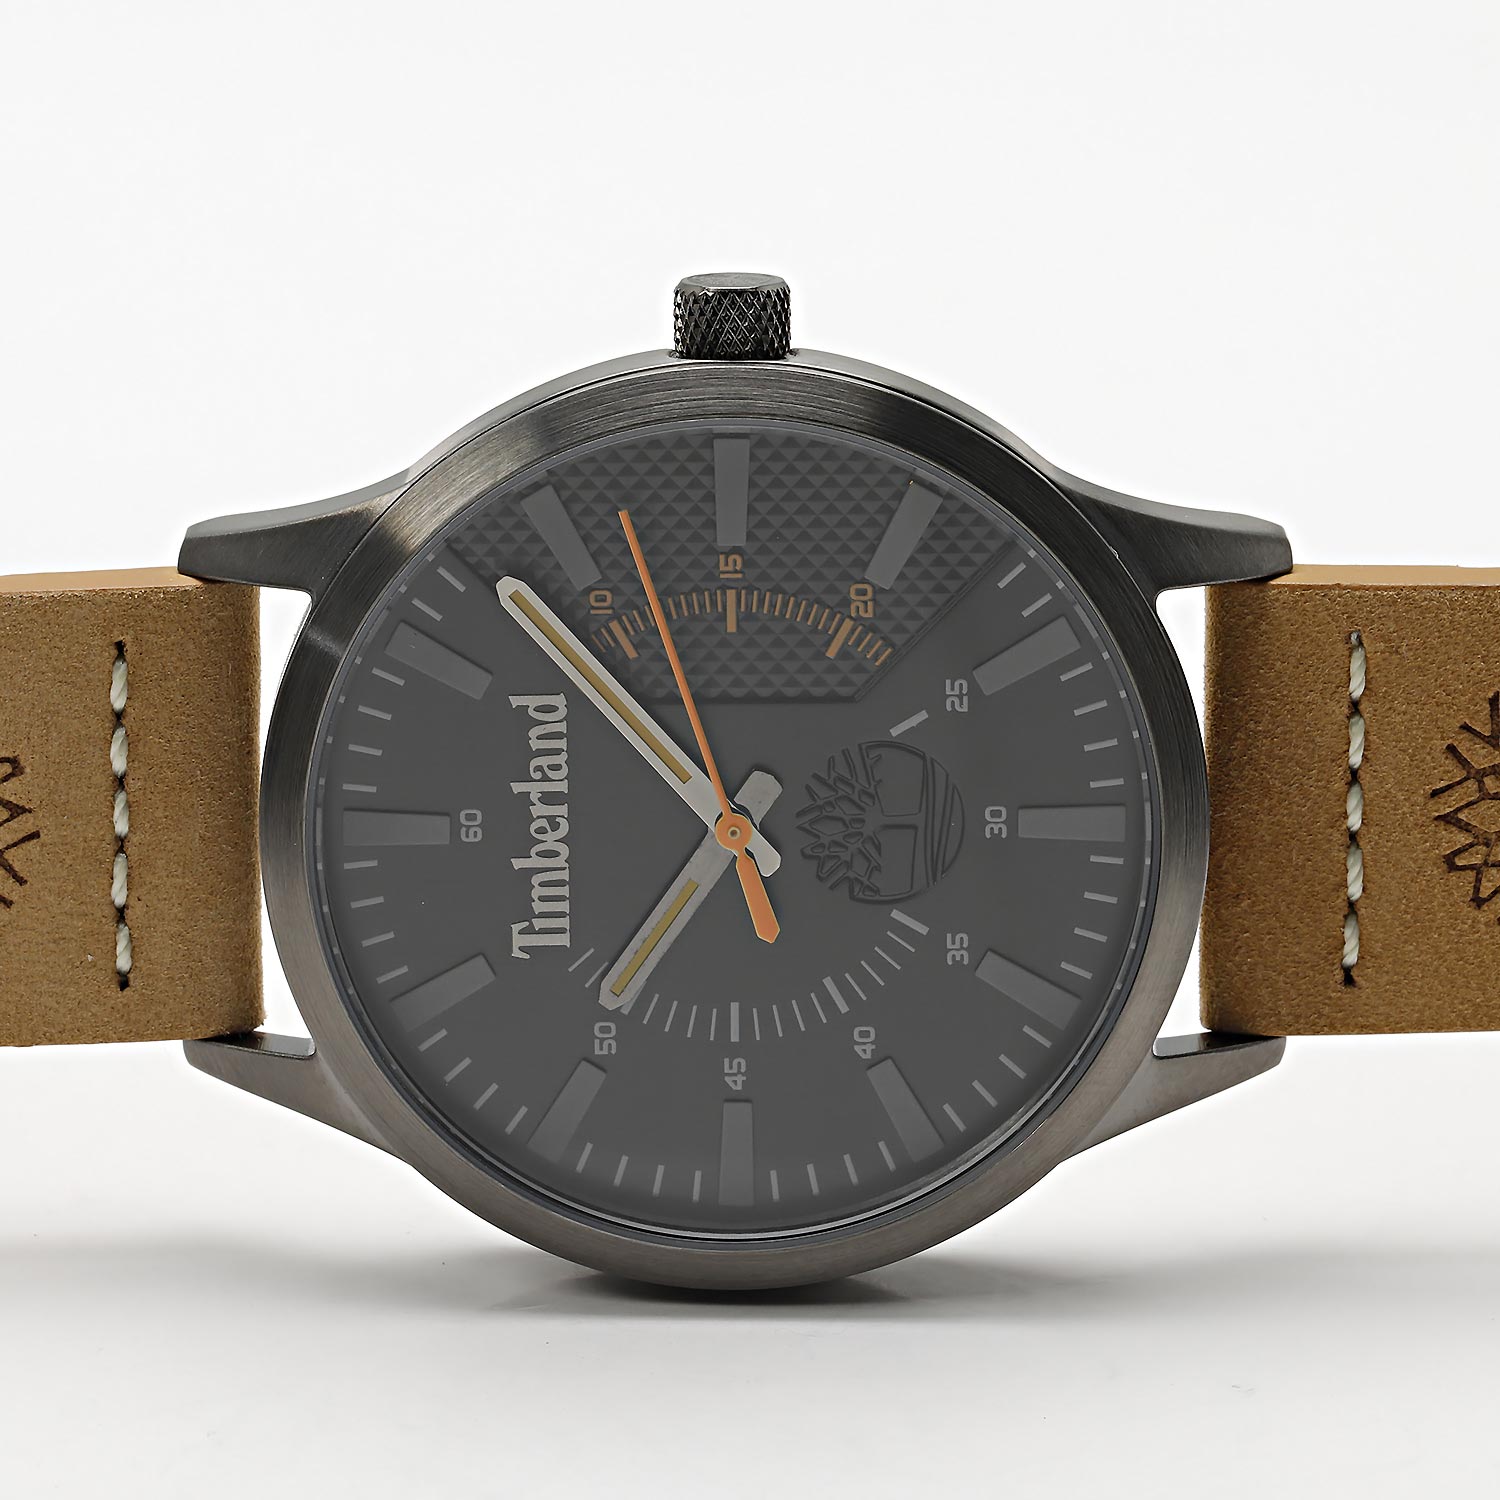 Наручные часы Timberland TDWGA2103601 — инструкция, фото, характеристики, купить по интернет-магазине лучшей AllTime.ru описание цене, в